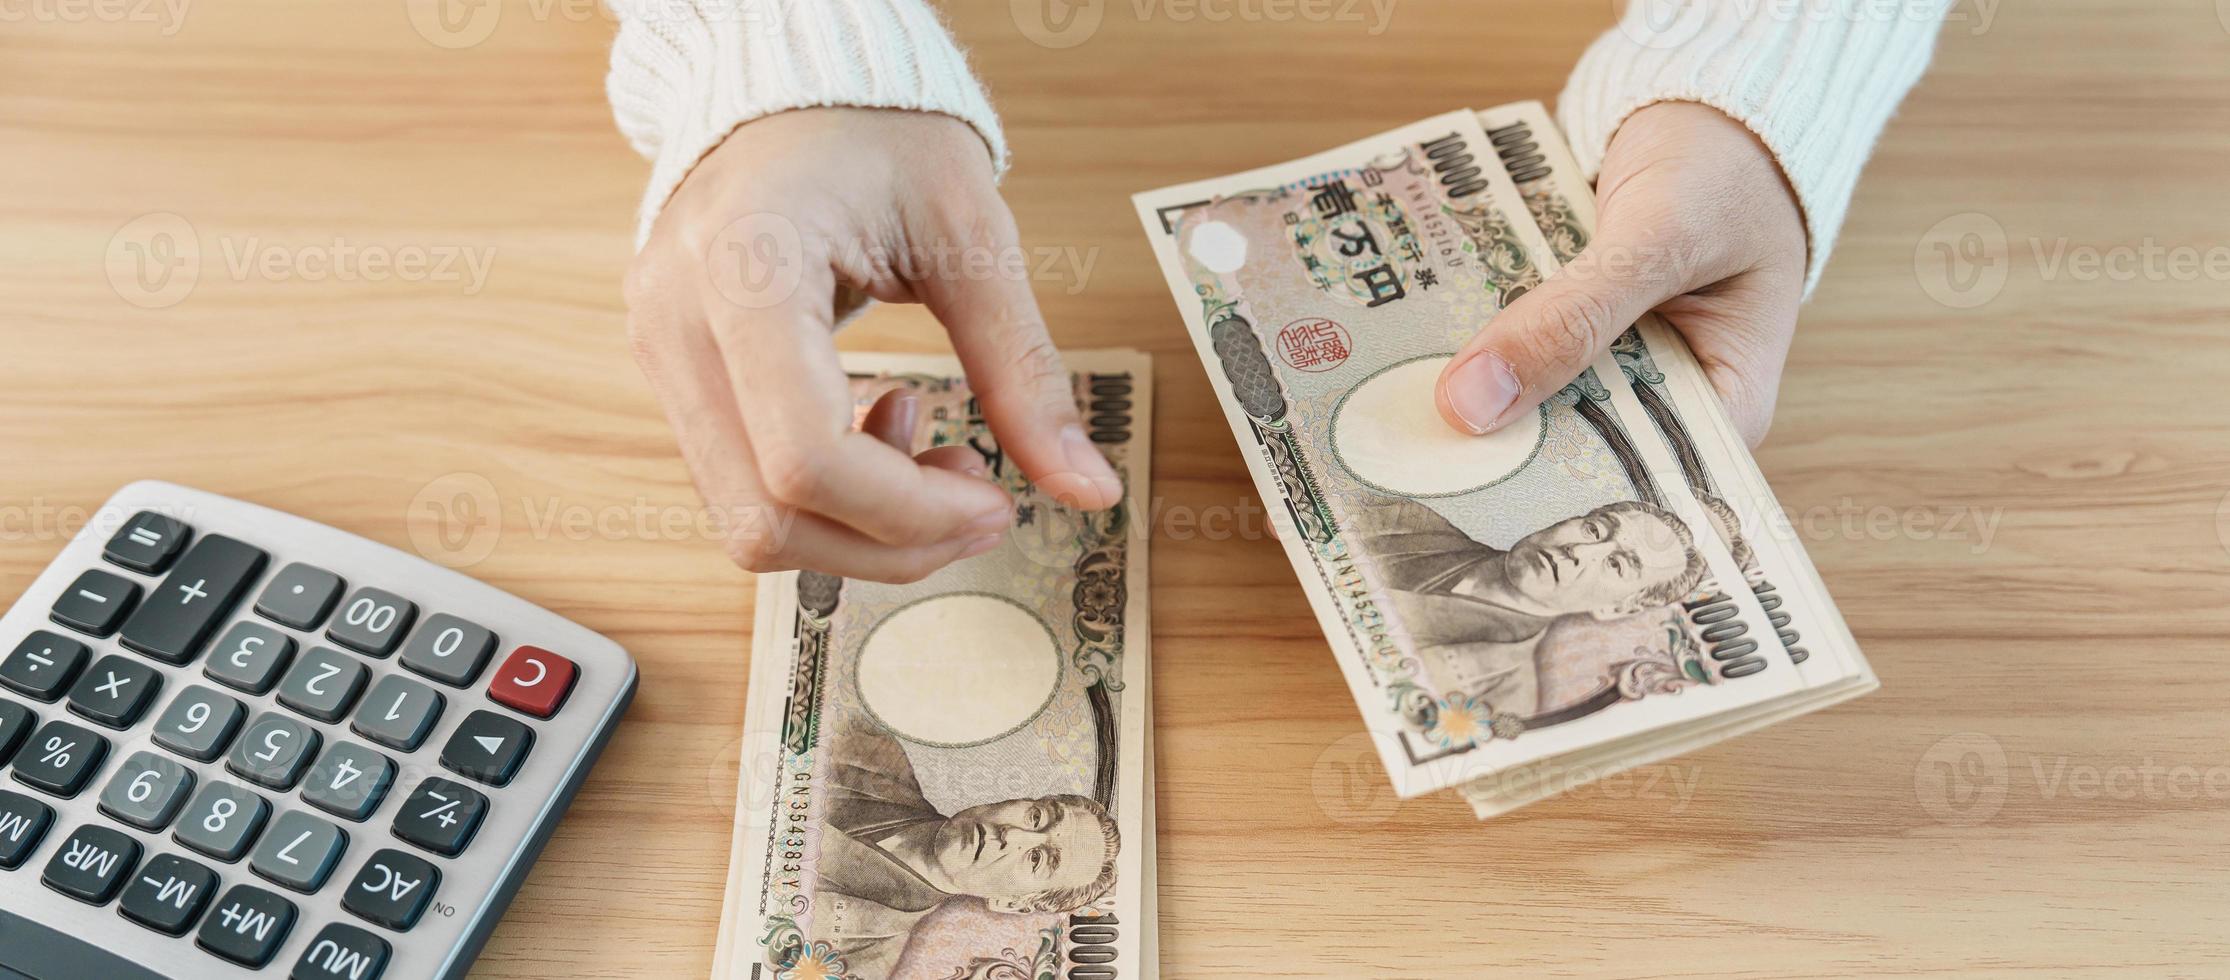 mão de mulher contando notas de iene japonês com calculadora. dinheiro de mil ienes. dinheiro do japão, imposto, economia de recessão, inflação, investimento, finanças, poupança, salários e conceitos de pagamento foto